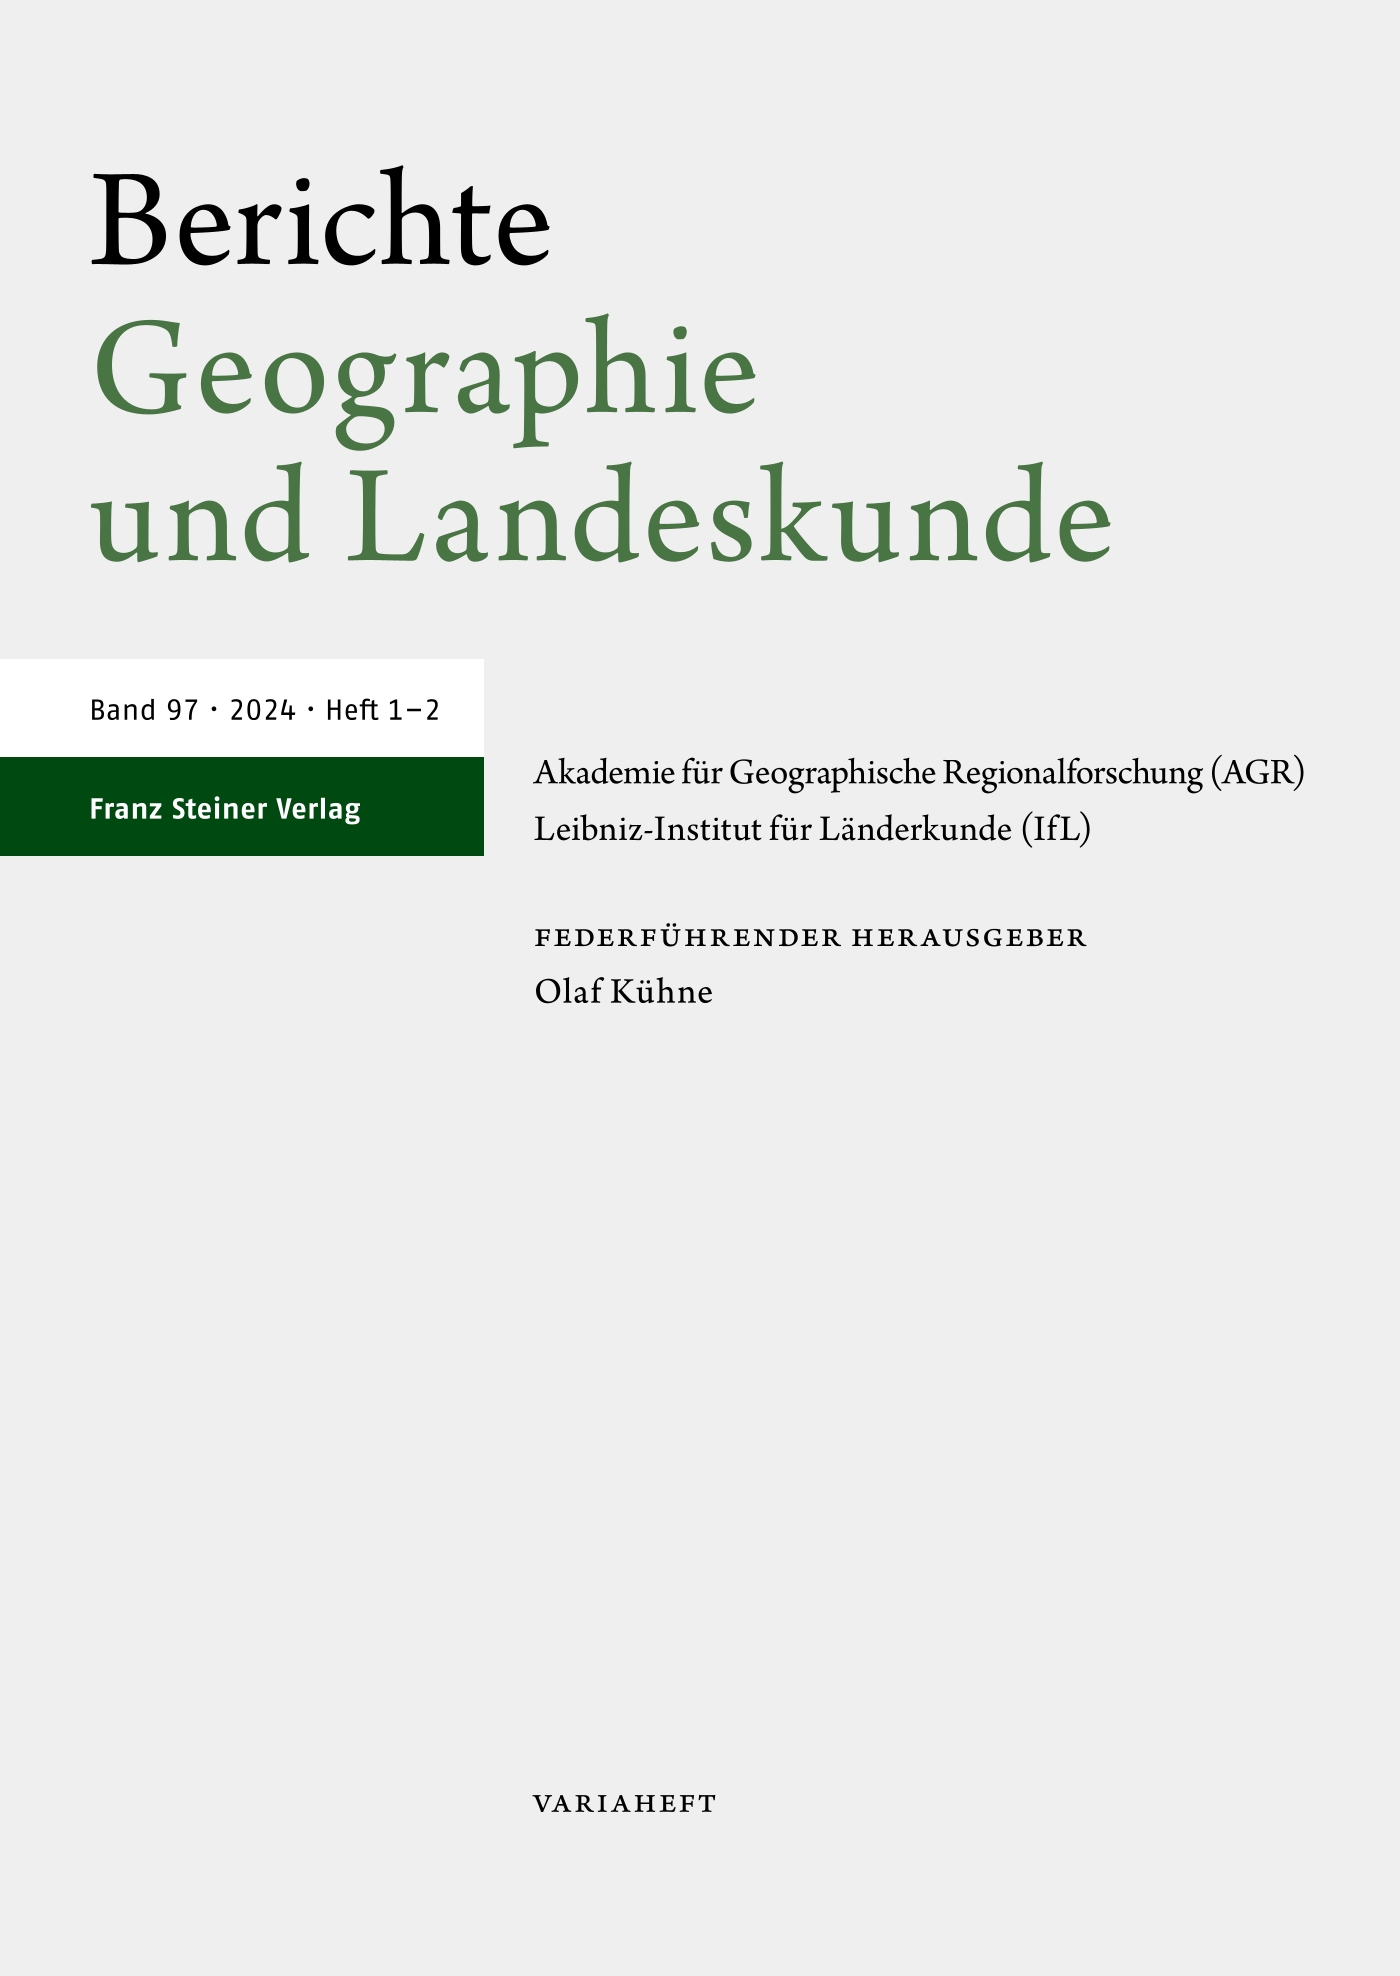 Berichte. Geographie und Landeskunde - online